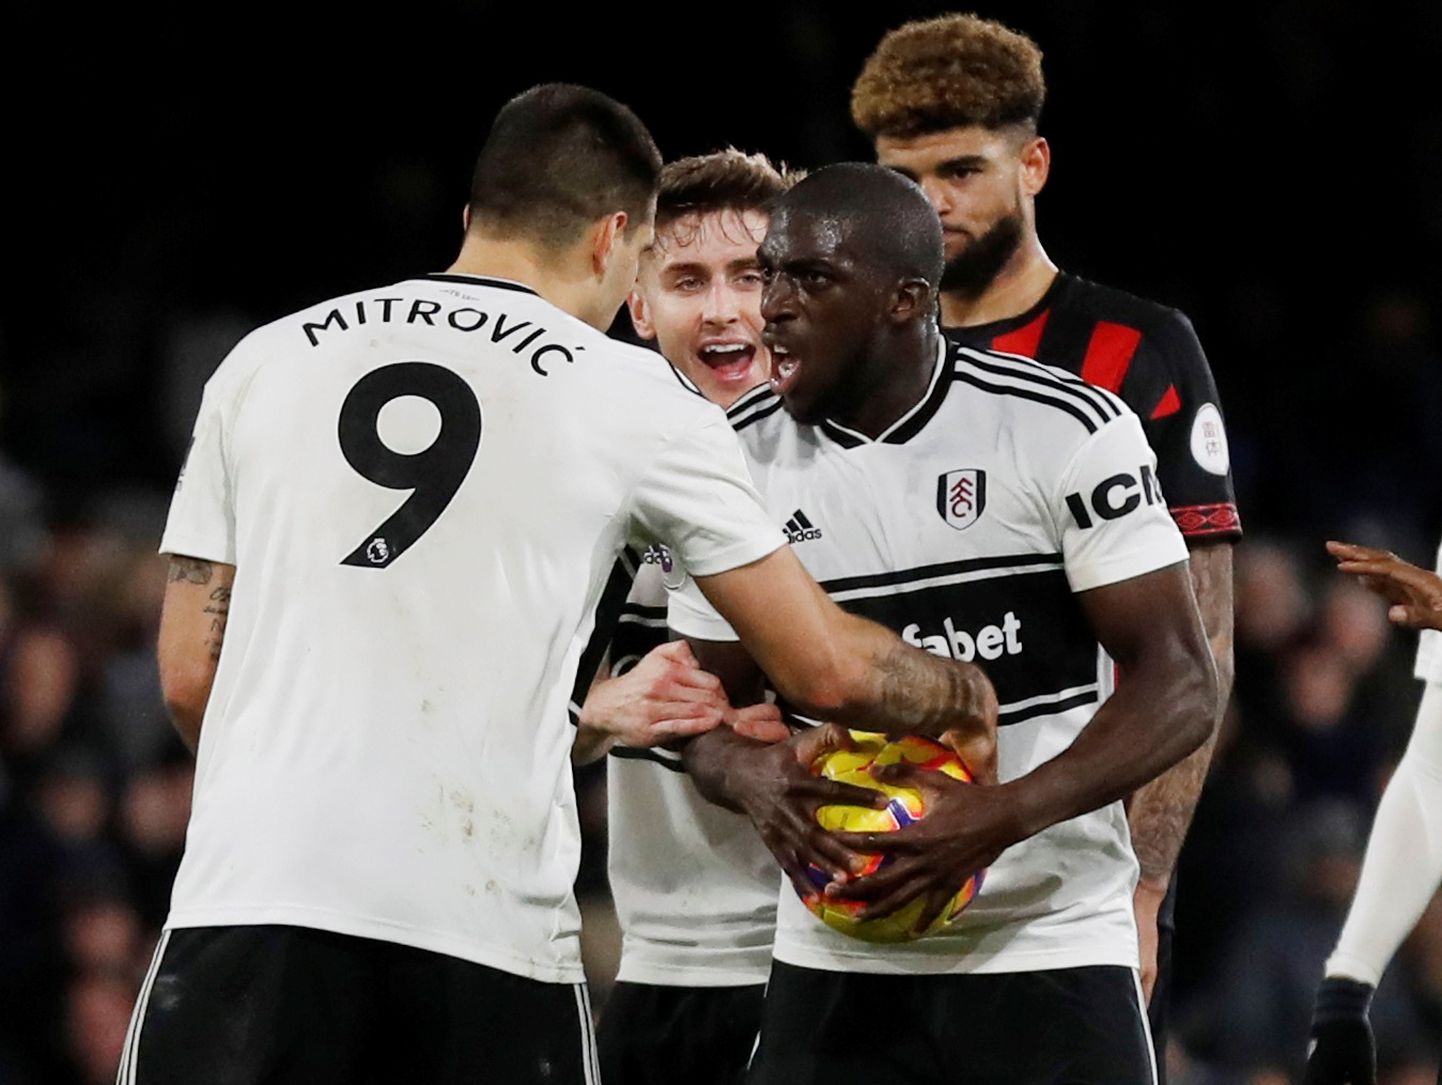 29. detsembril toimunud Fulhami ja Huddersfield Towni vaheline kohtumine, kus Aboubakar Kamara (palliga) ja Aleksandar Mitrović ei suutnud rahumeelselt otsustada, kumb neist läheb penaltit lööma. Lõpuks oli selleks jõumeetodit kasutanud Kamara, kes aga penaltipunktilt eksis.